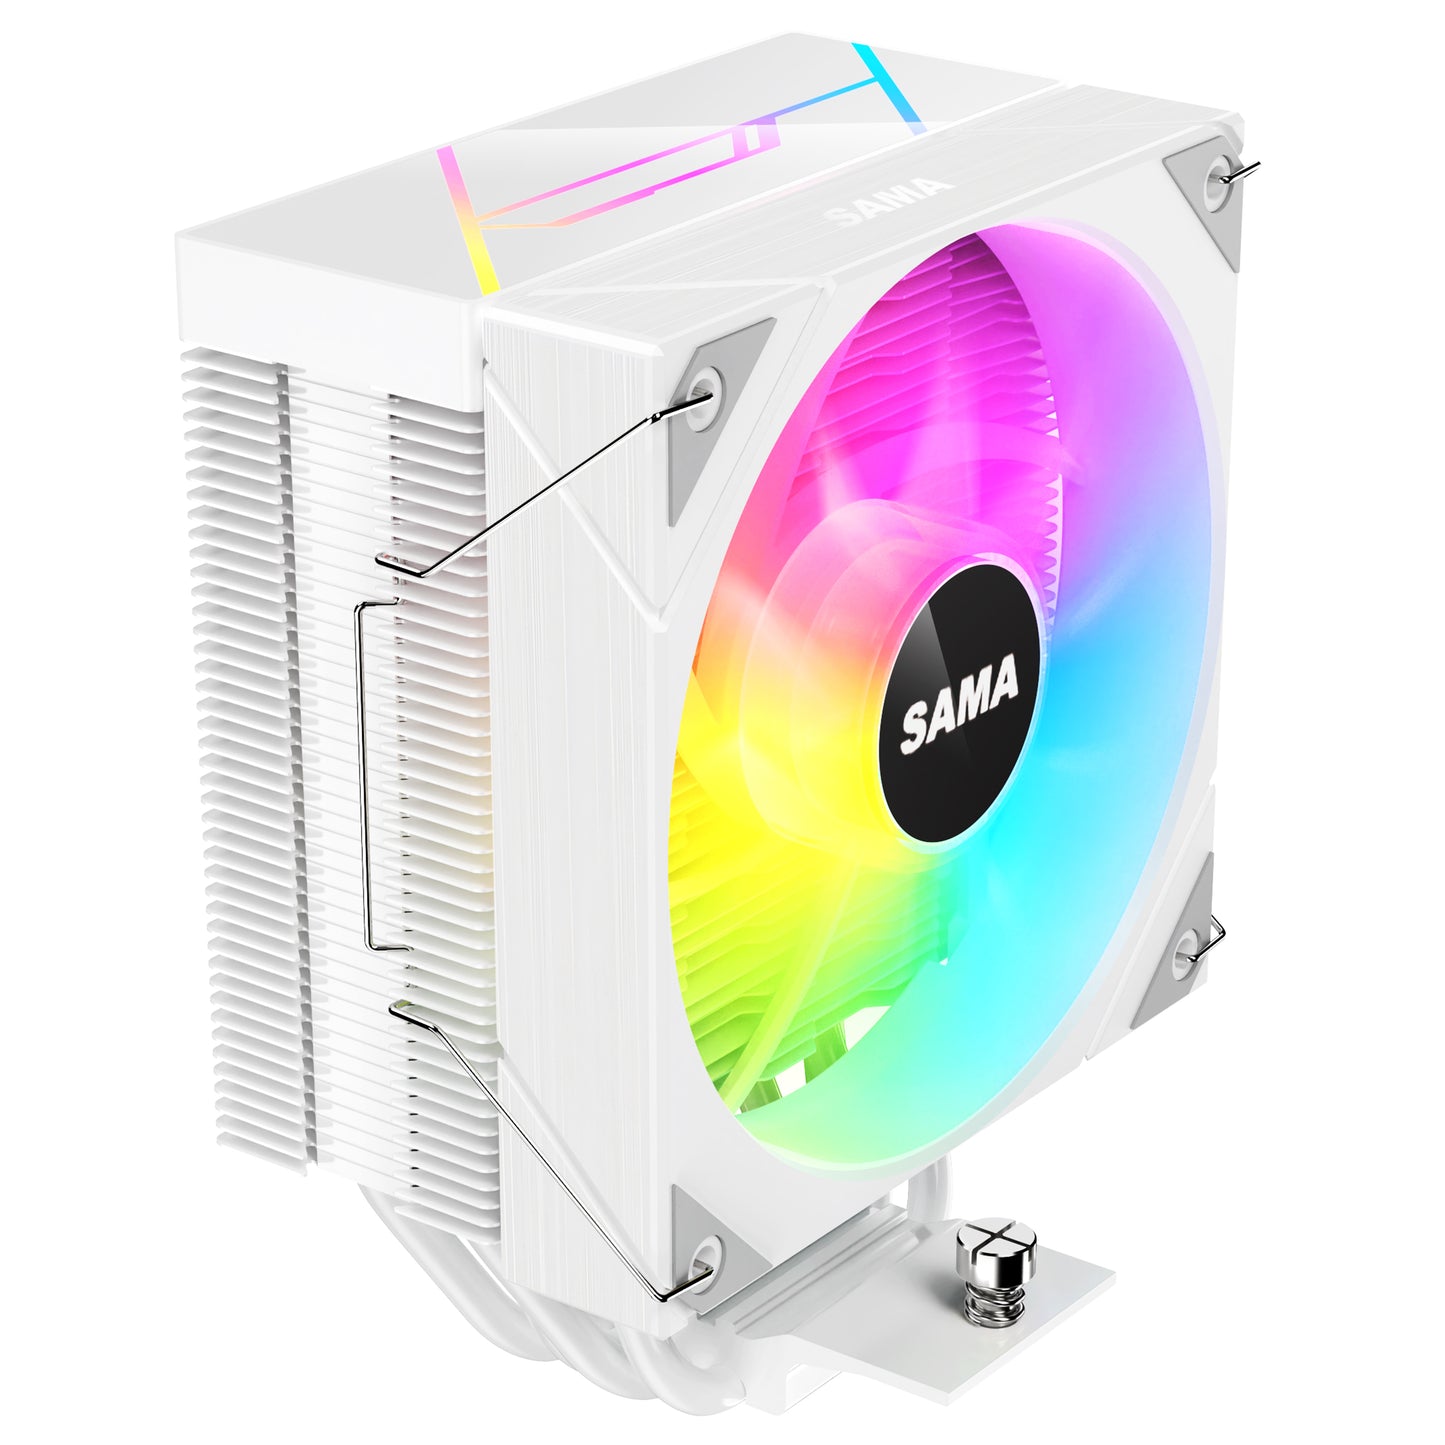 SAMA L4PI CPU AIR Cooler